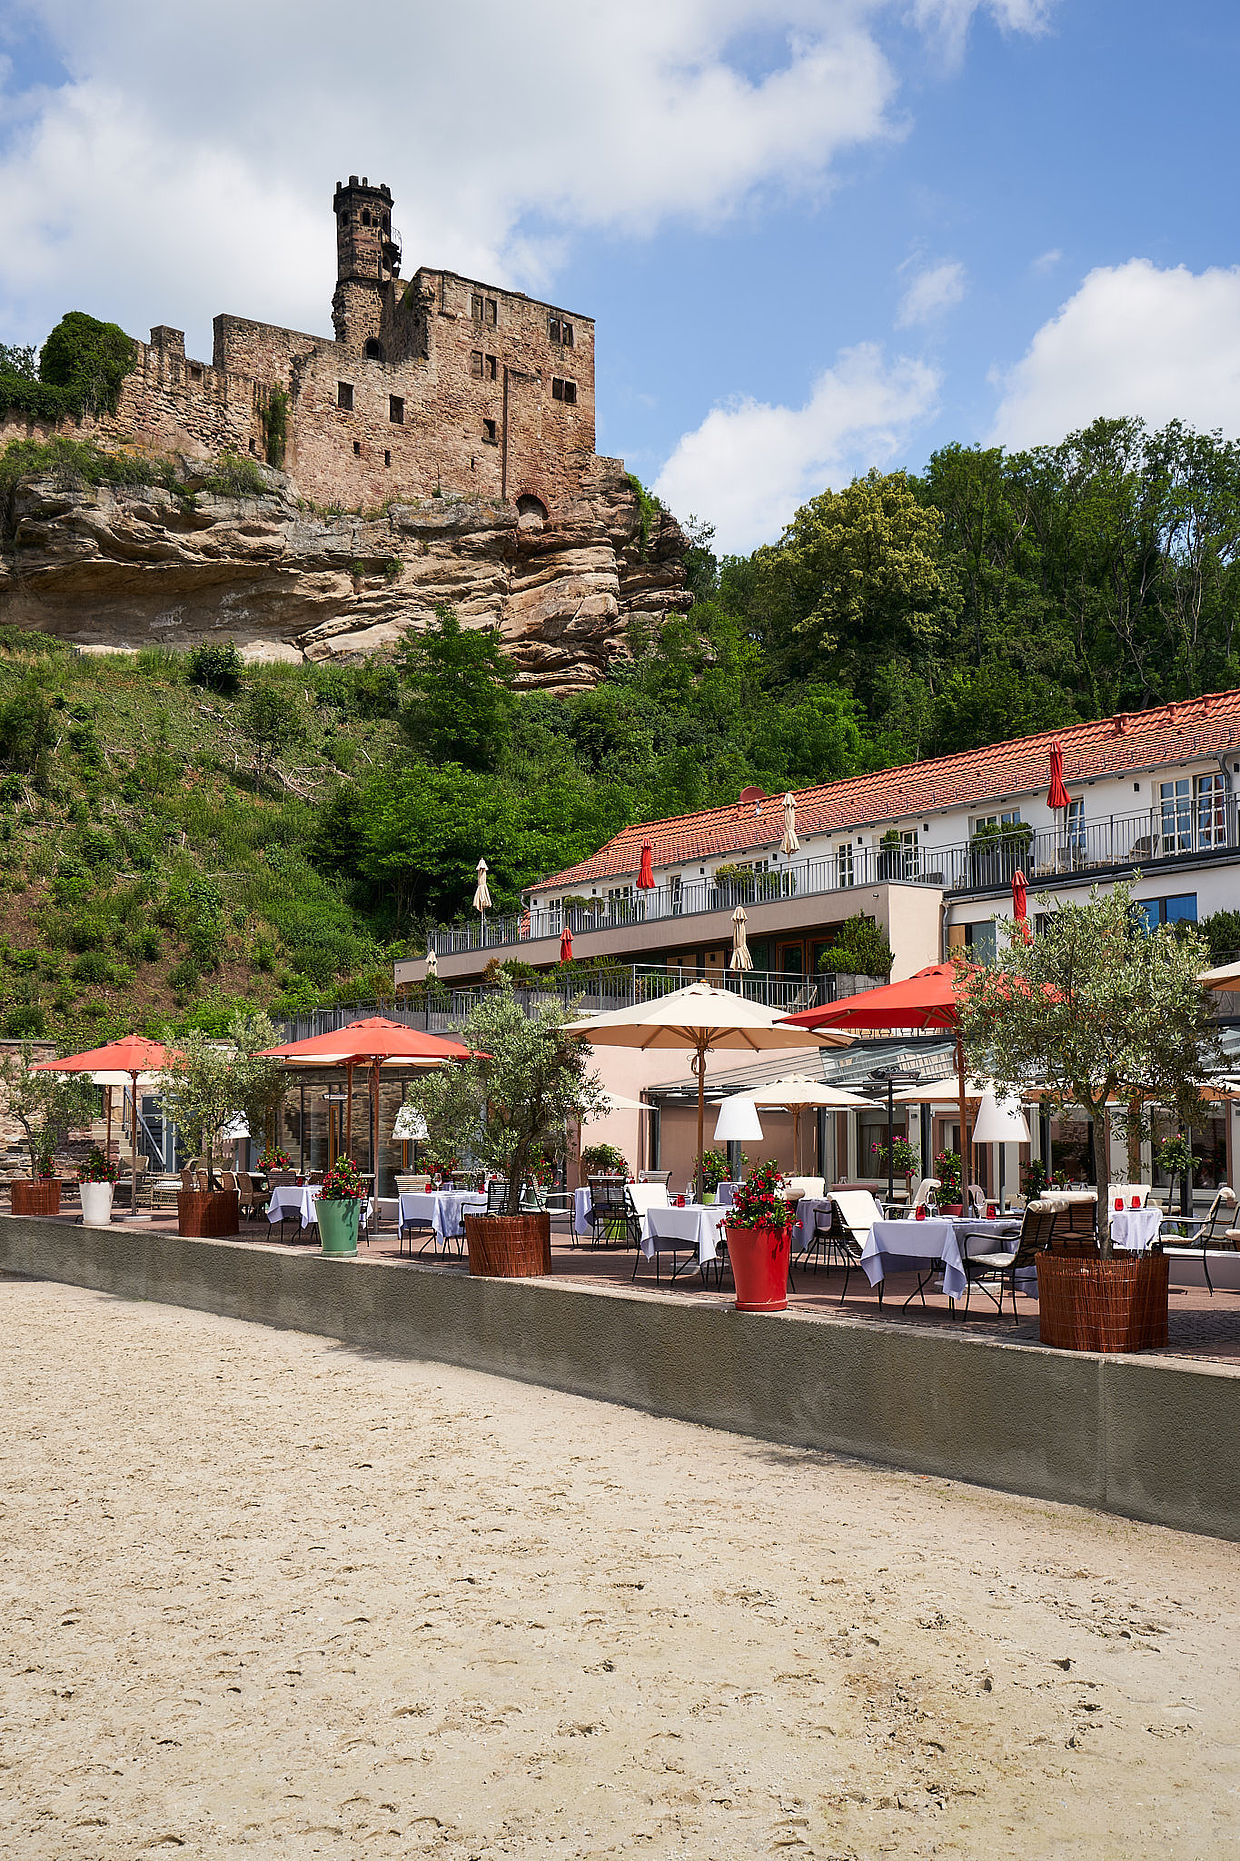 Außenansicht des Hotels unter der Burgruine und der dazugehörigen Restaurant Terrasse